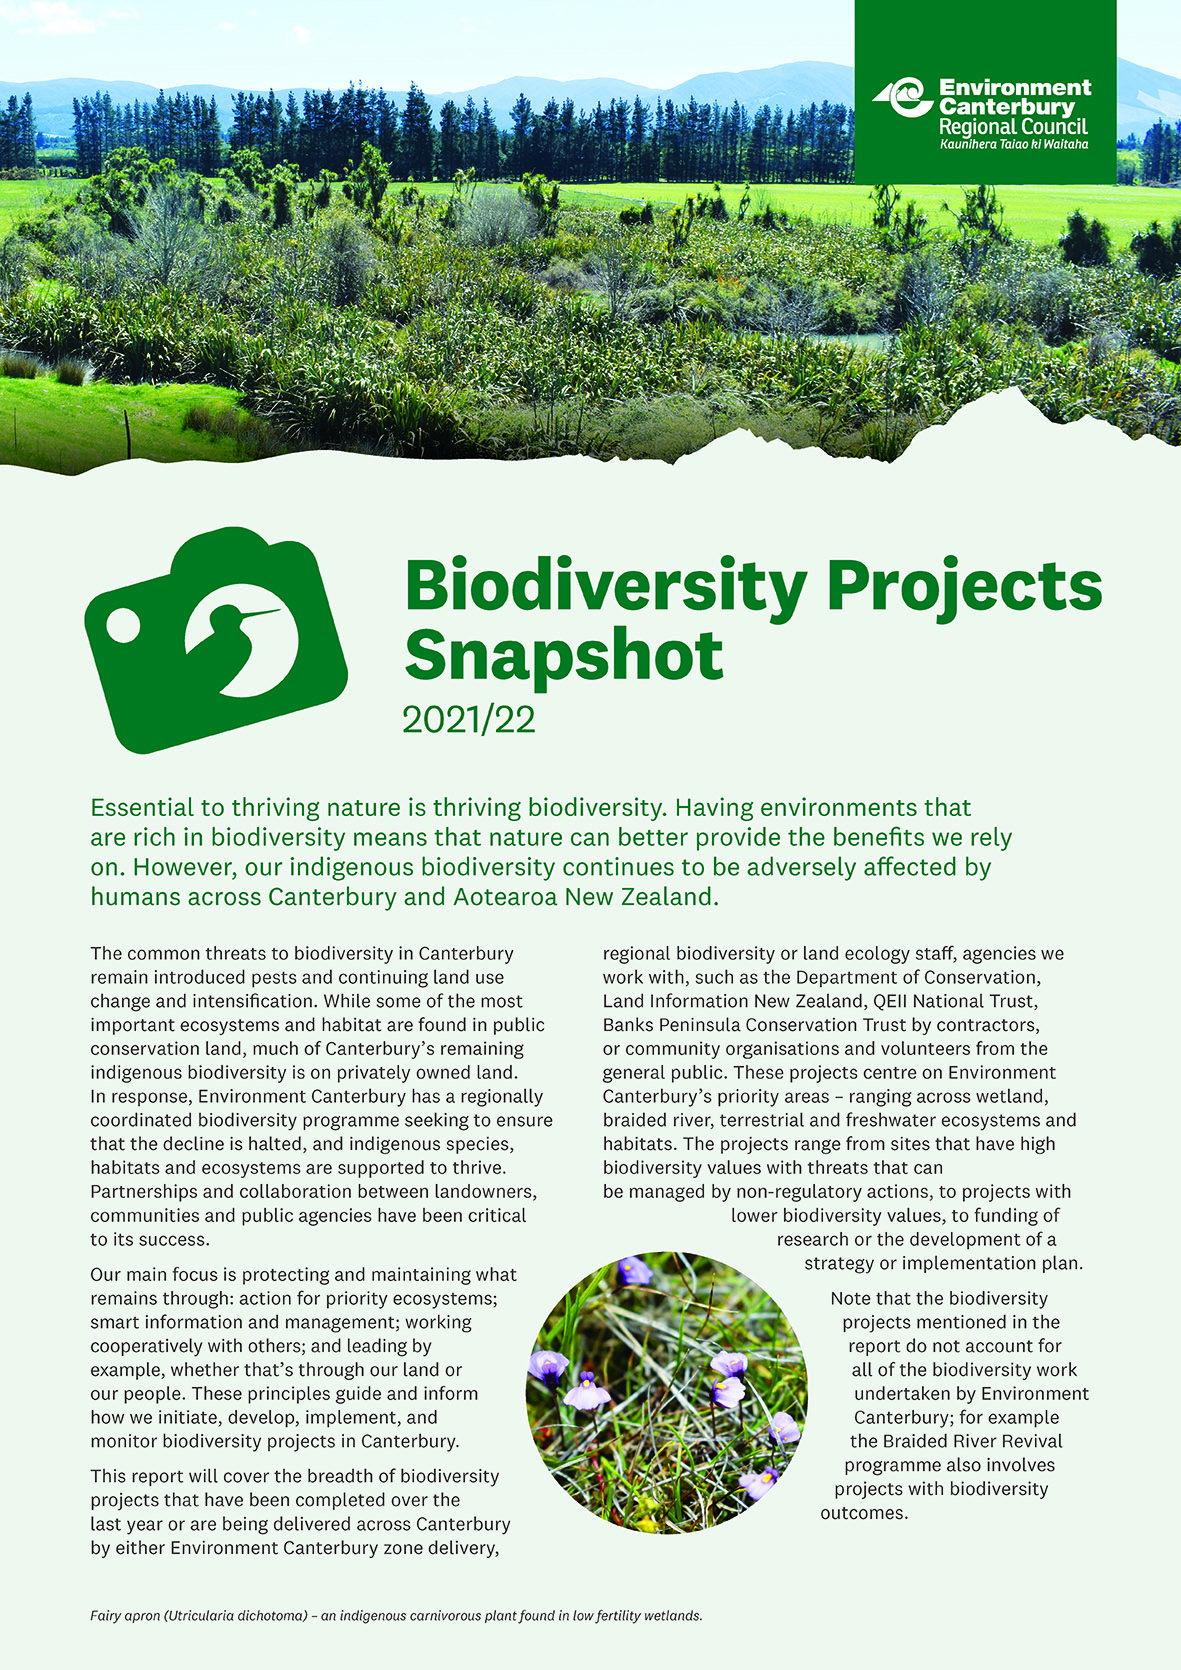 6529 BIOD Biodiversity snapshot 2021 22 SEP 2022 website